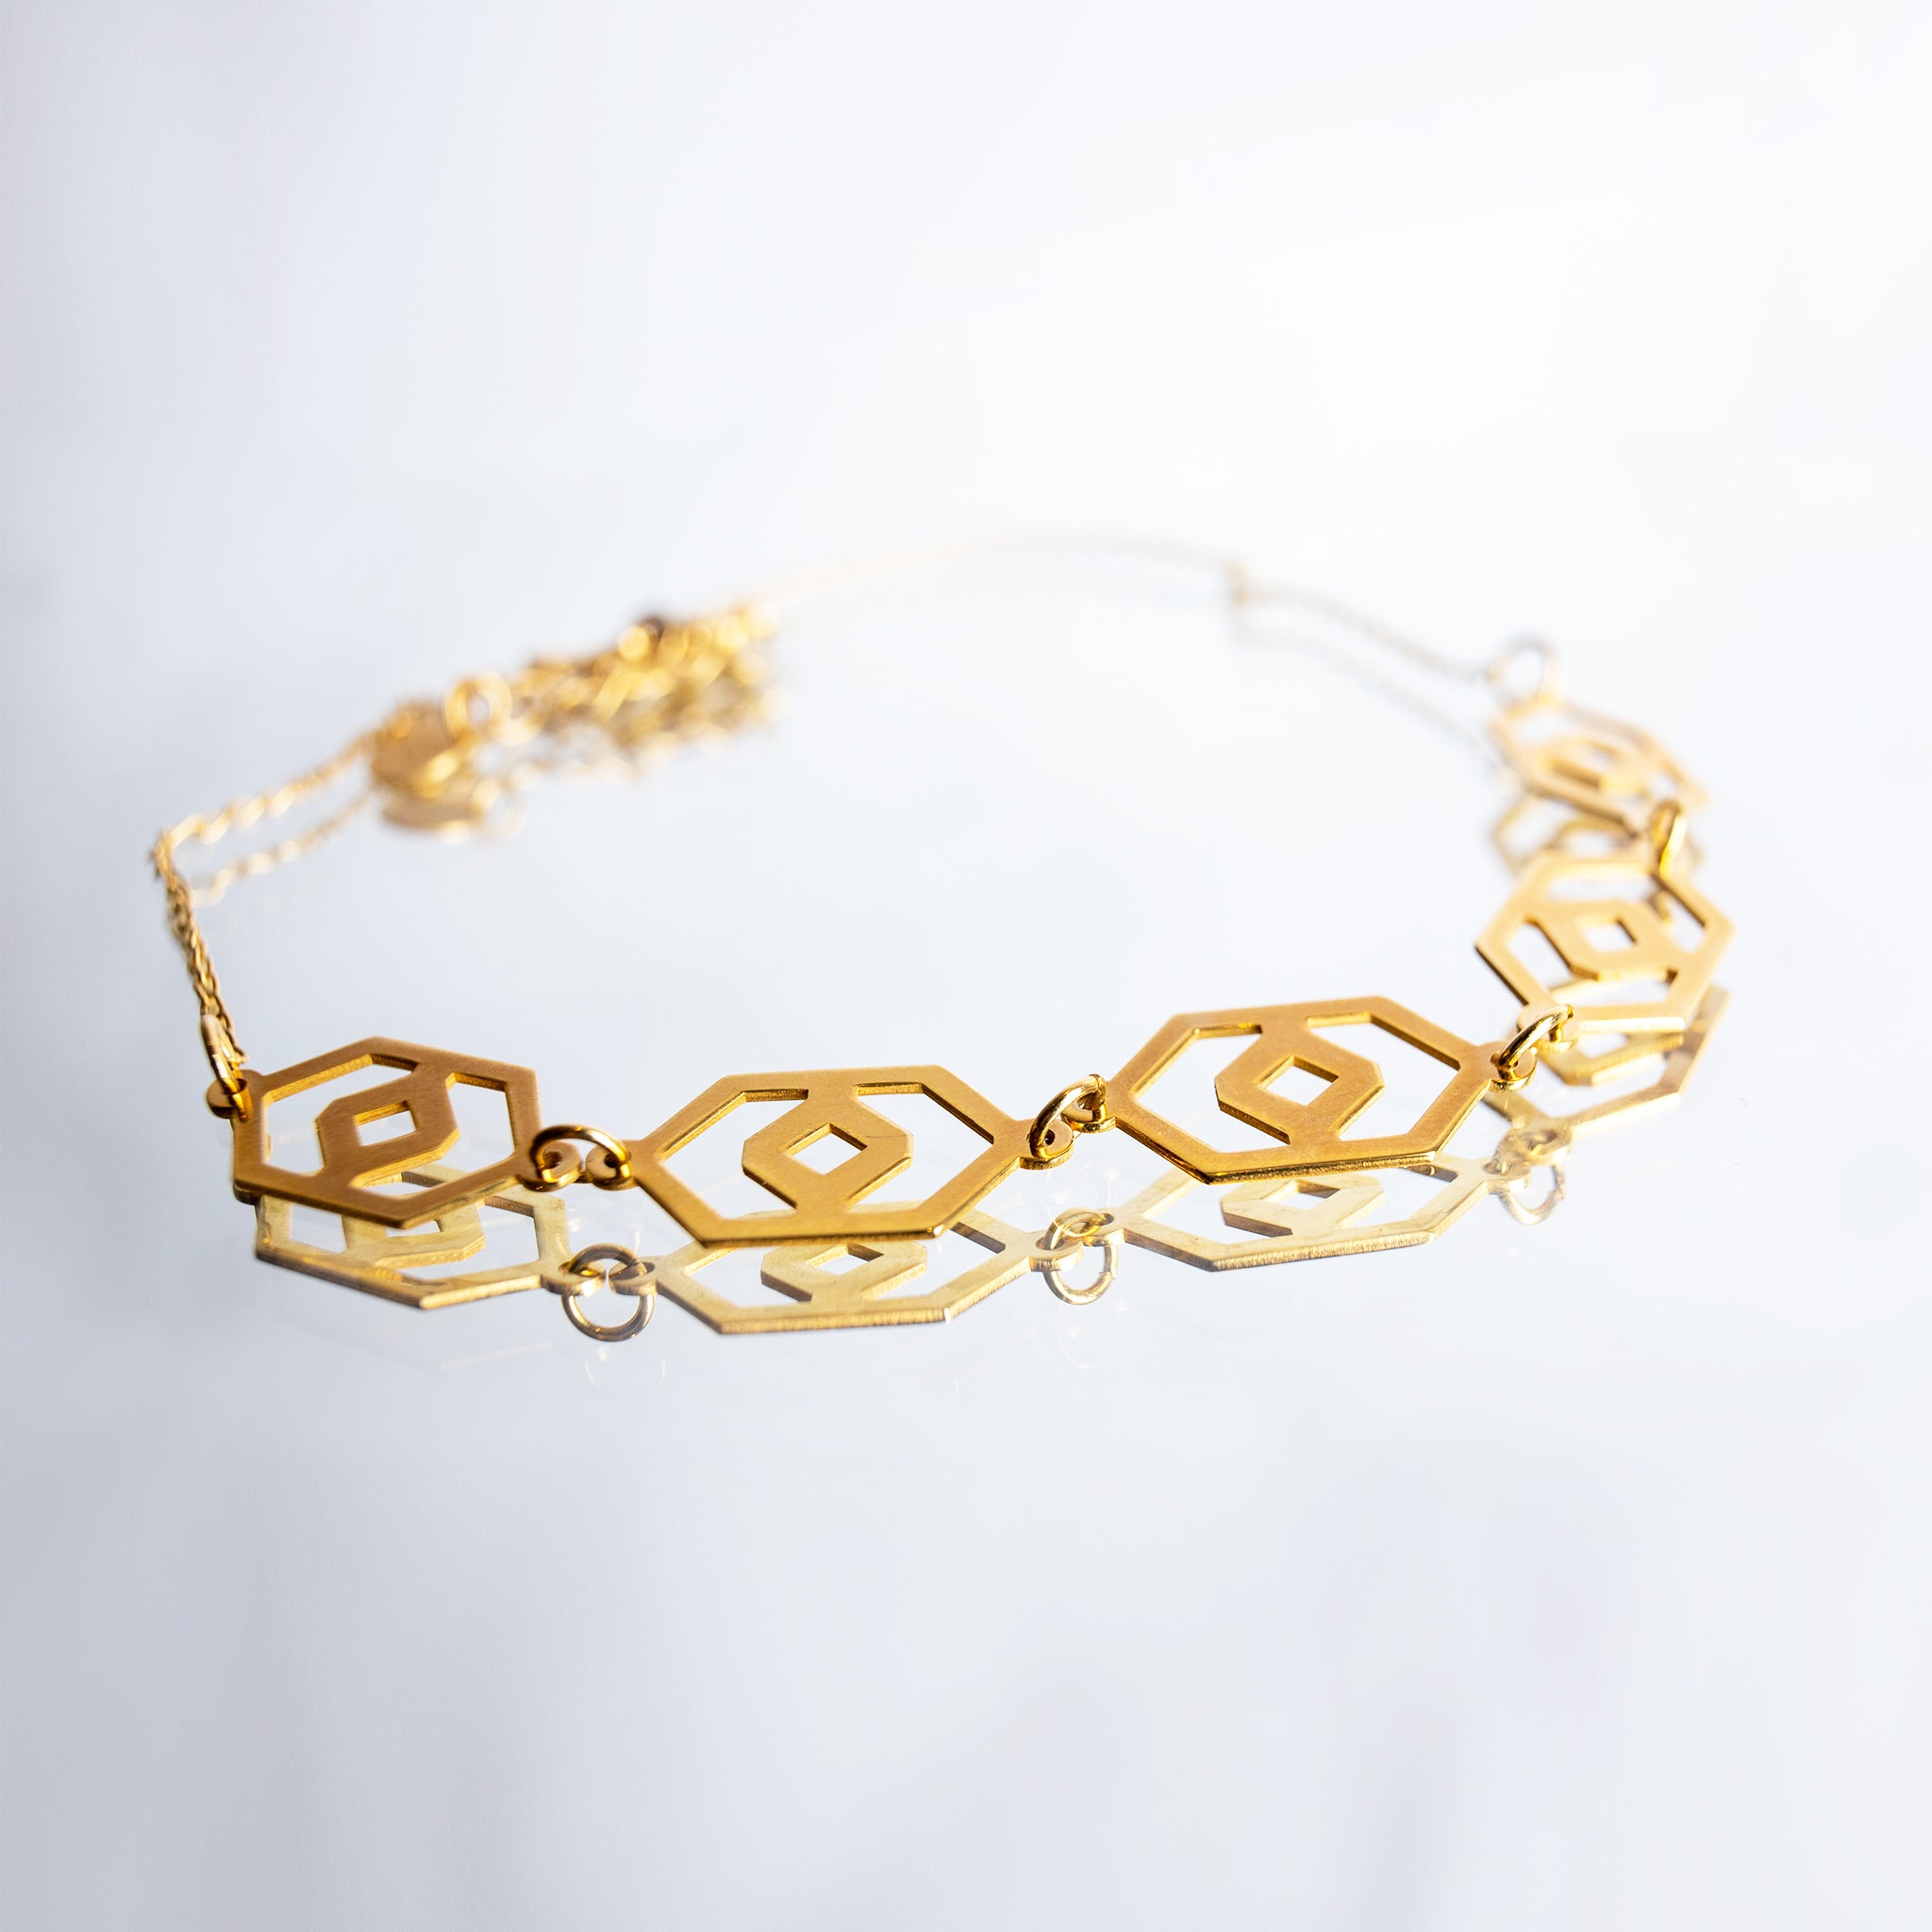 Millié Jewelry - Millié Jewelry - Huipil Choker Necklace - Collares - Diseño Mexicano - Hecho en México